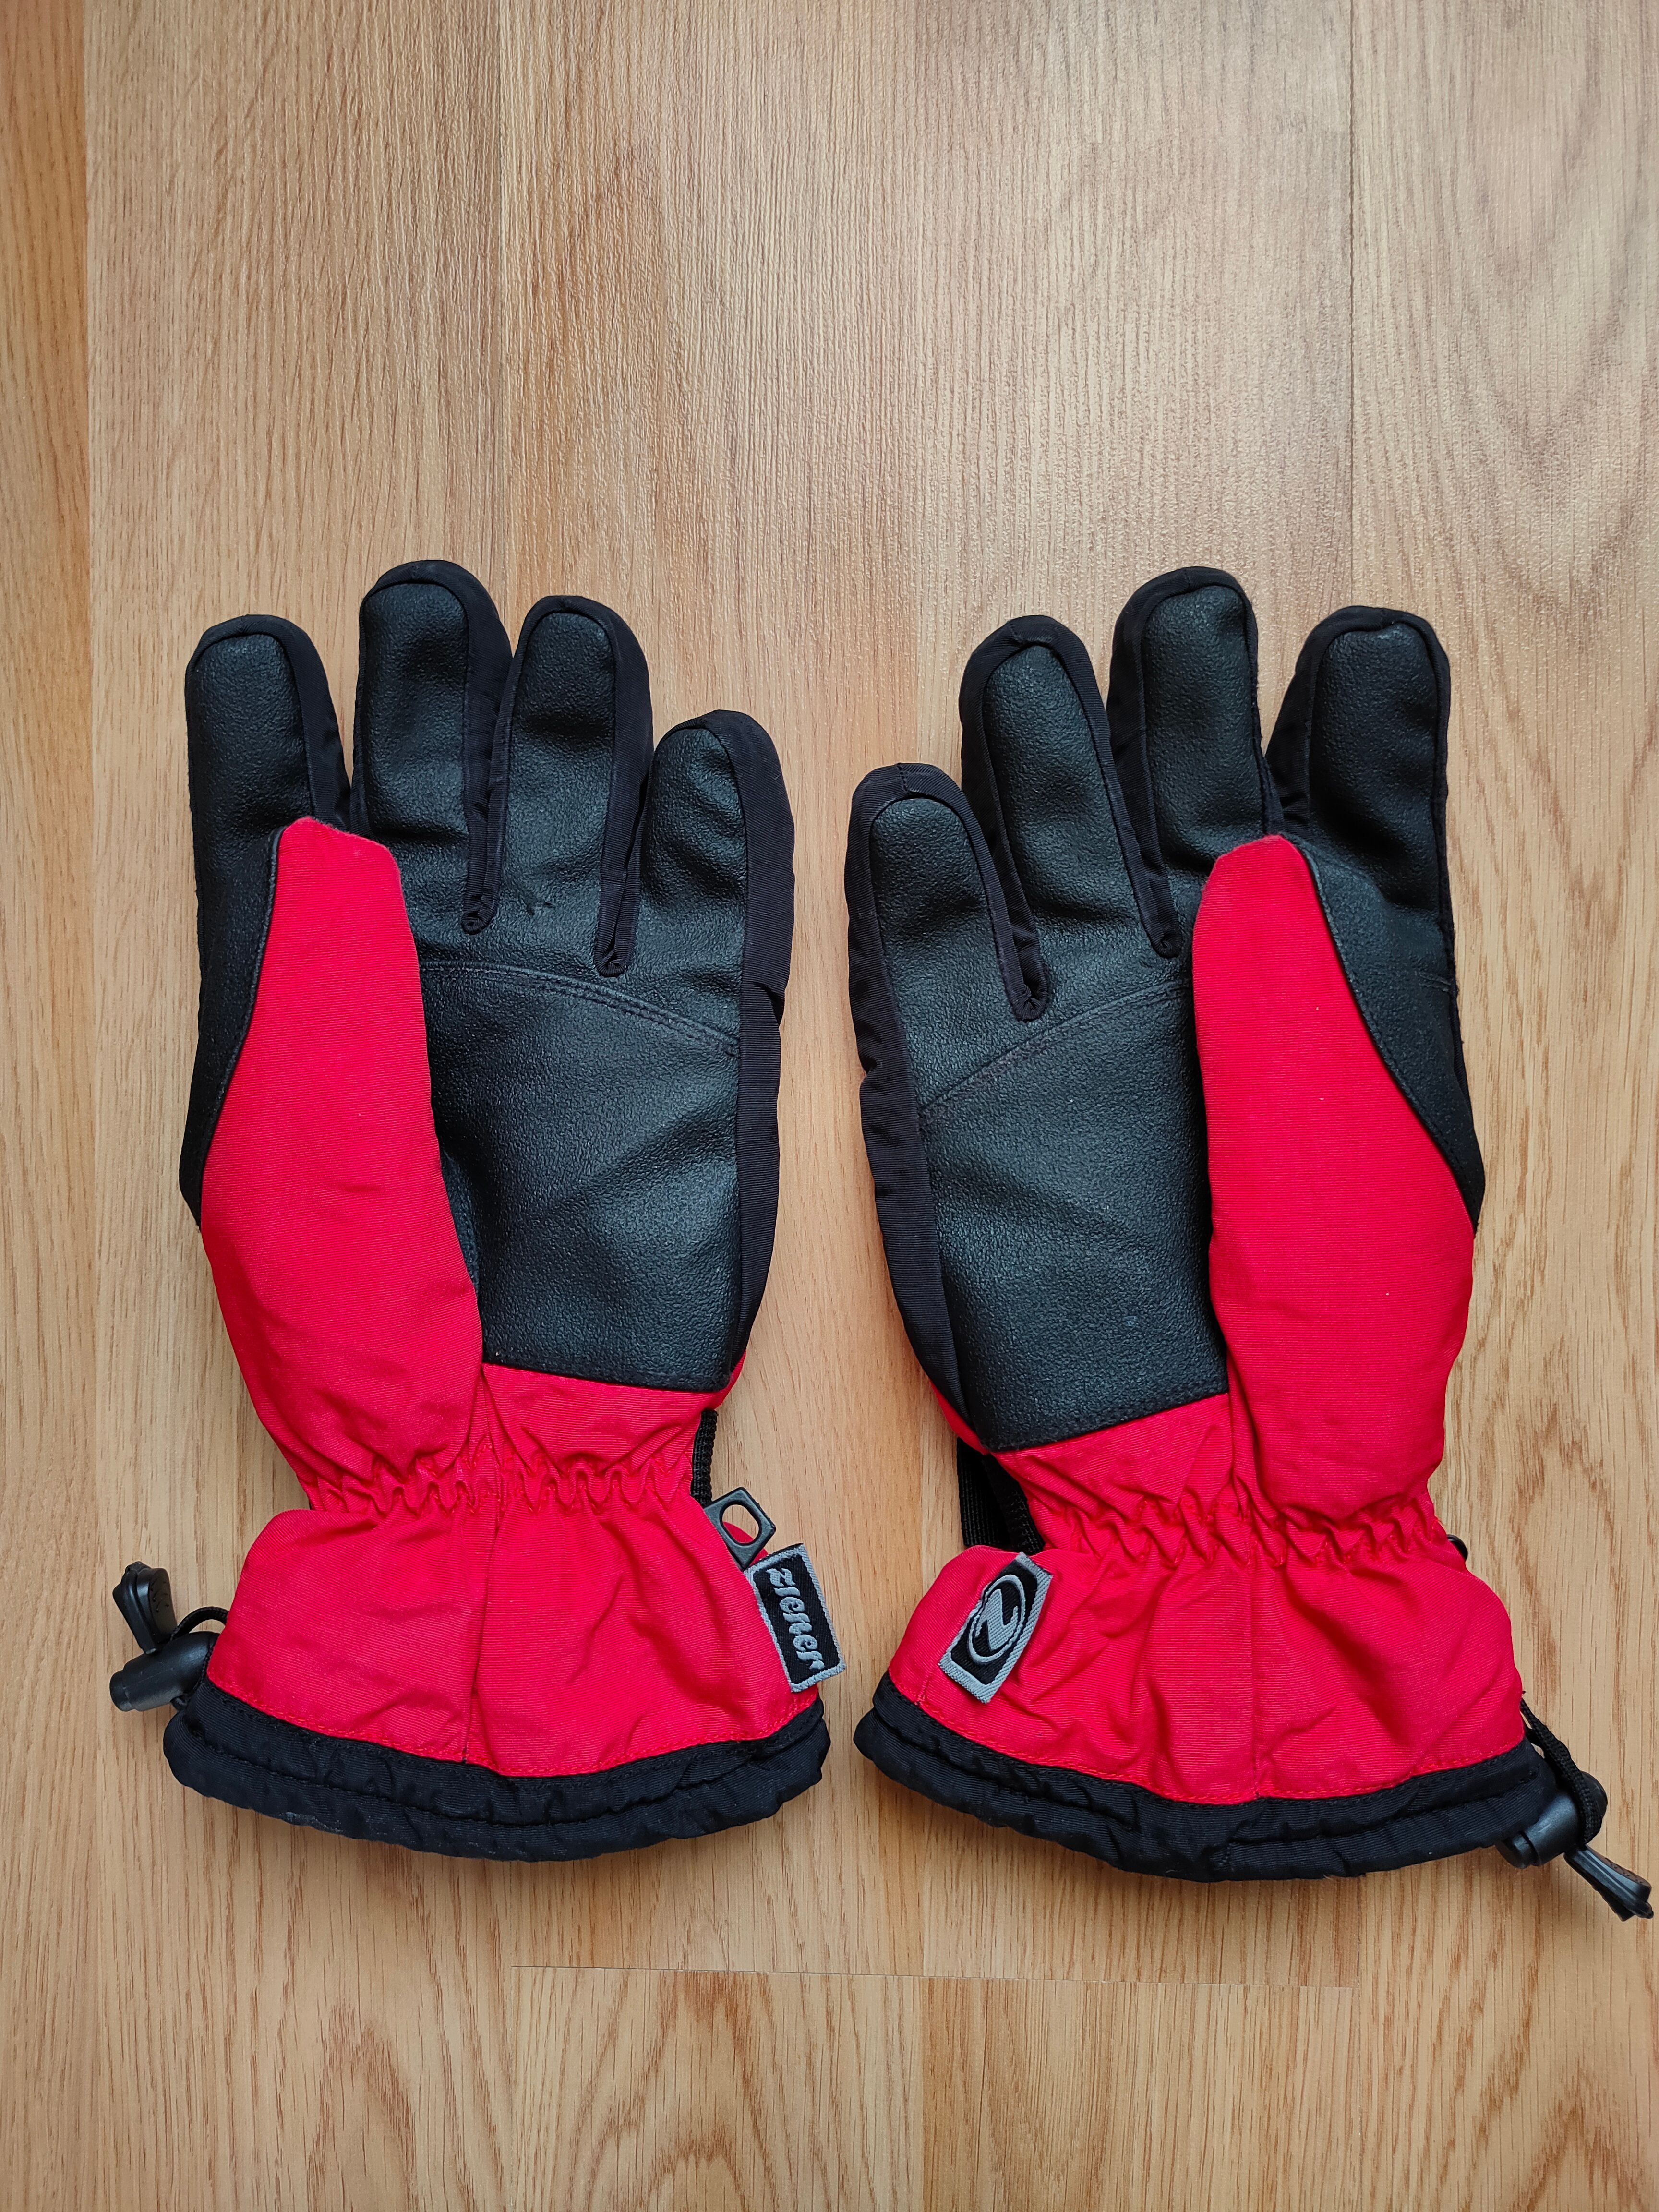 Ski Vintage Ziener Goretex Gloves Gorpcore Outdoor Ski Gloves Size ONE SIZE - 3 Thumbnail